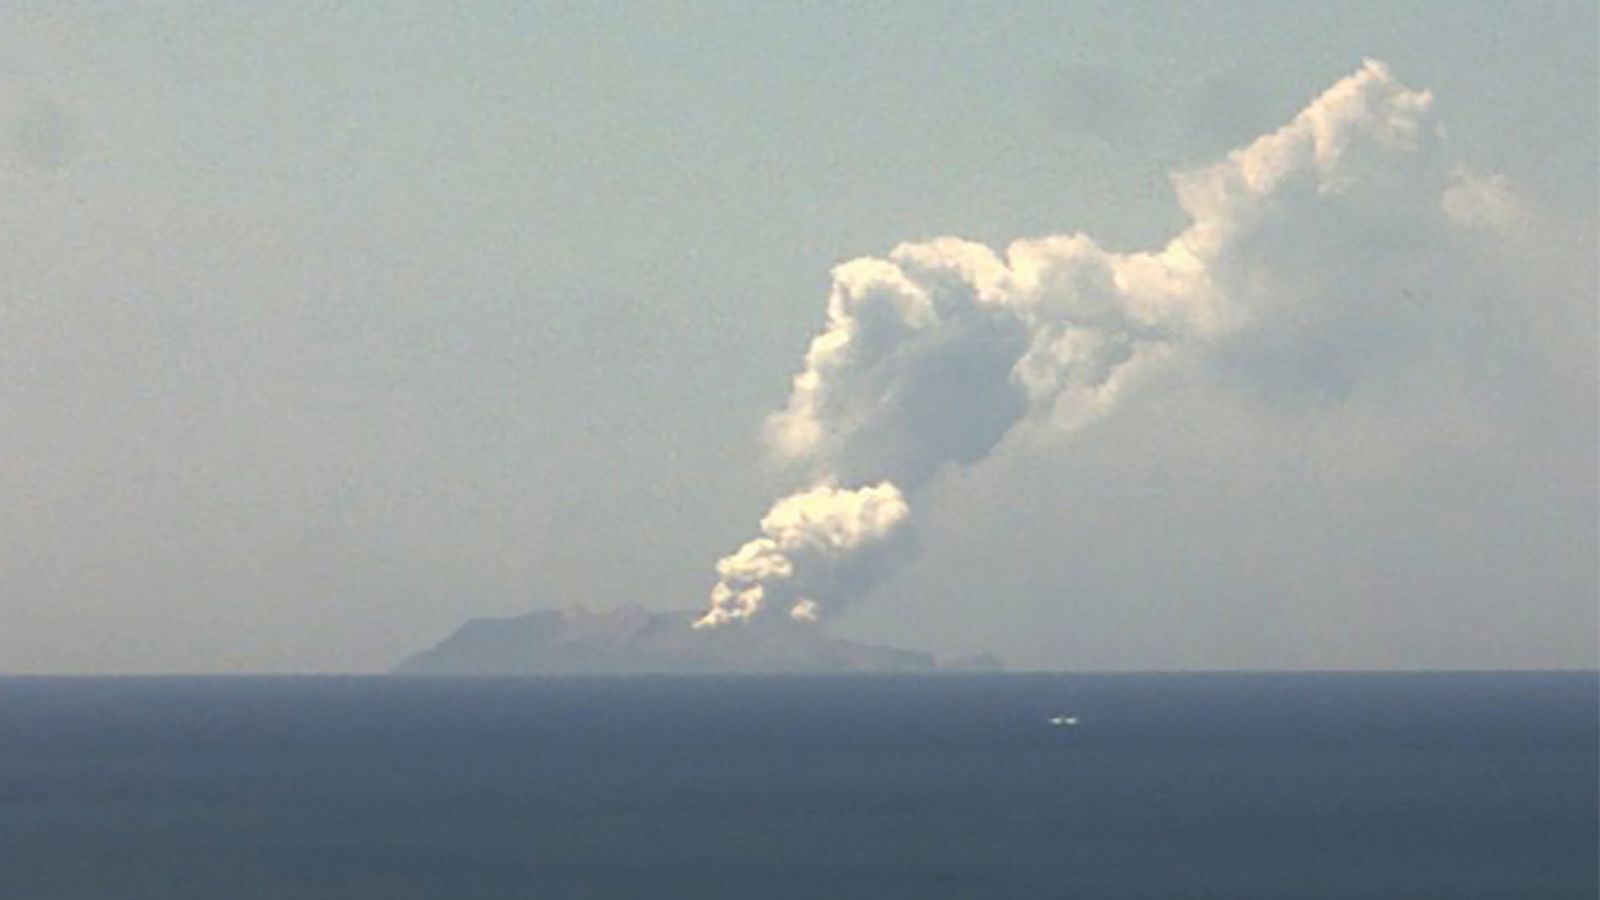 En las imágenes se aprecia la enorme columna de humo que sale desde la caldera, que según los expertos alcanzó los 3.000 metros de altura